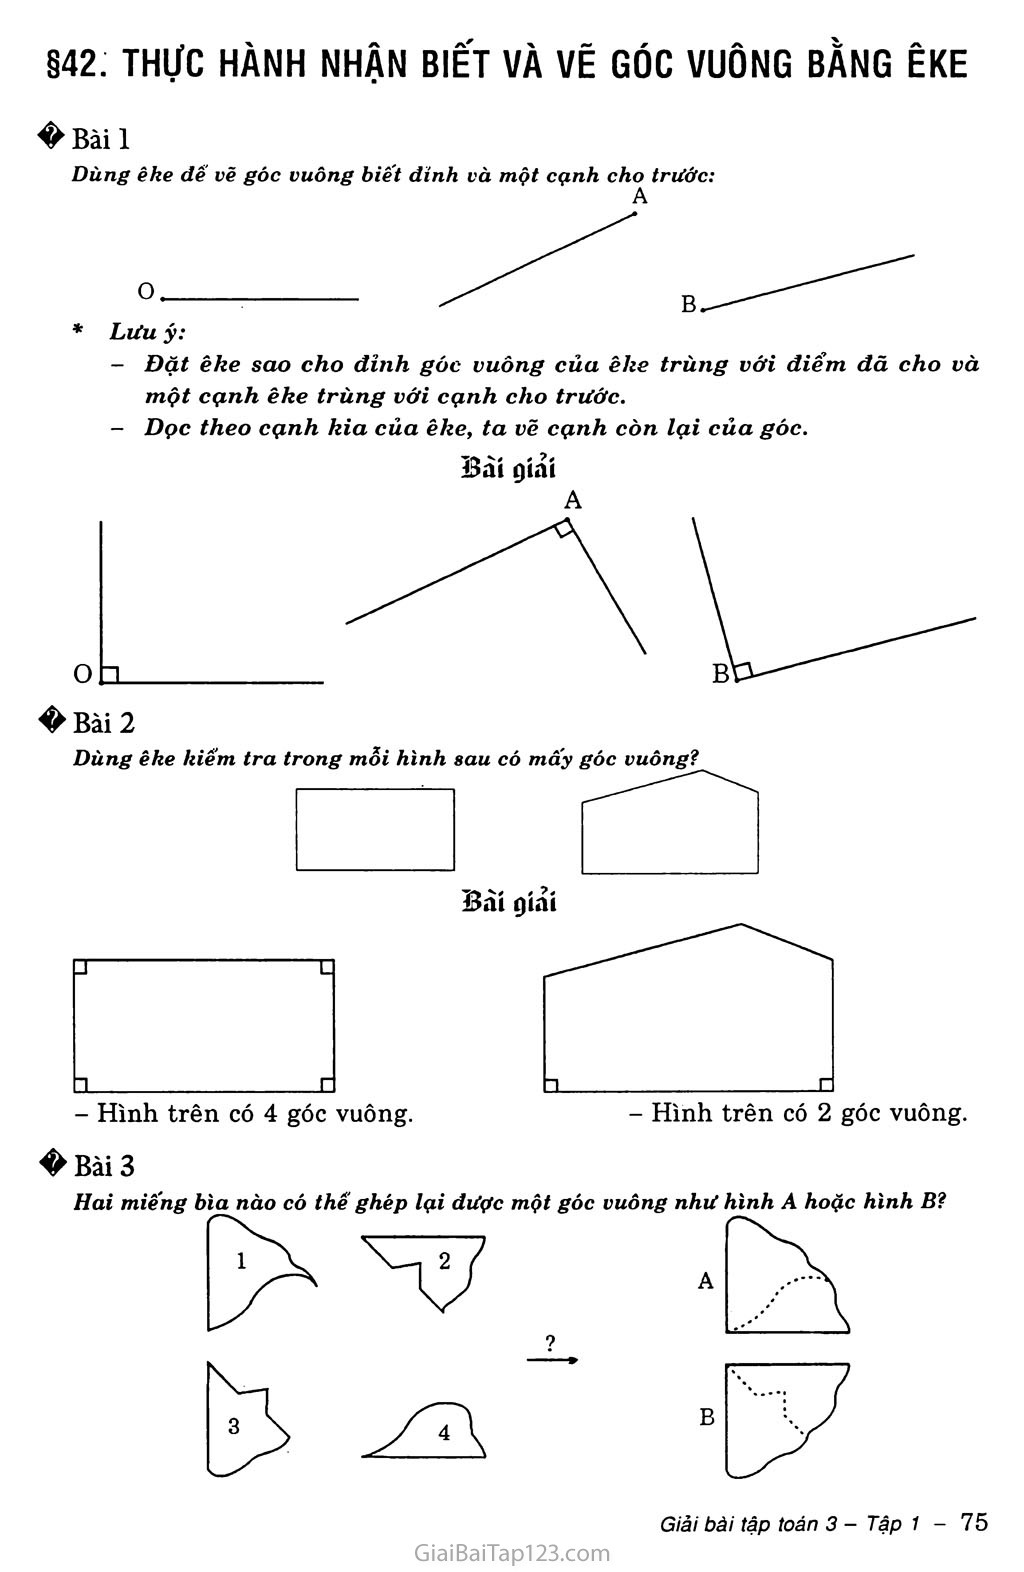 Hướng dẫn cách dùng eke để vẽ góc vuông đơn giản và tiện lợi